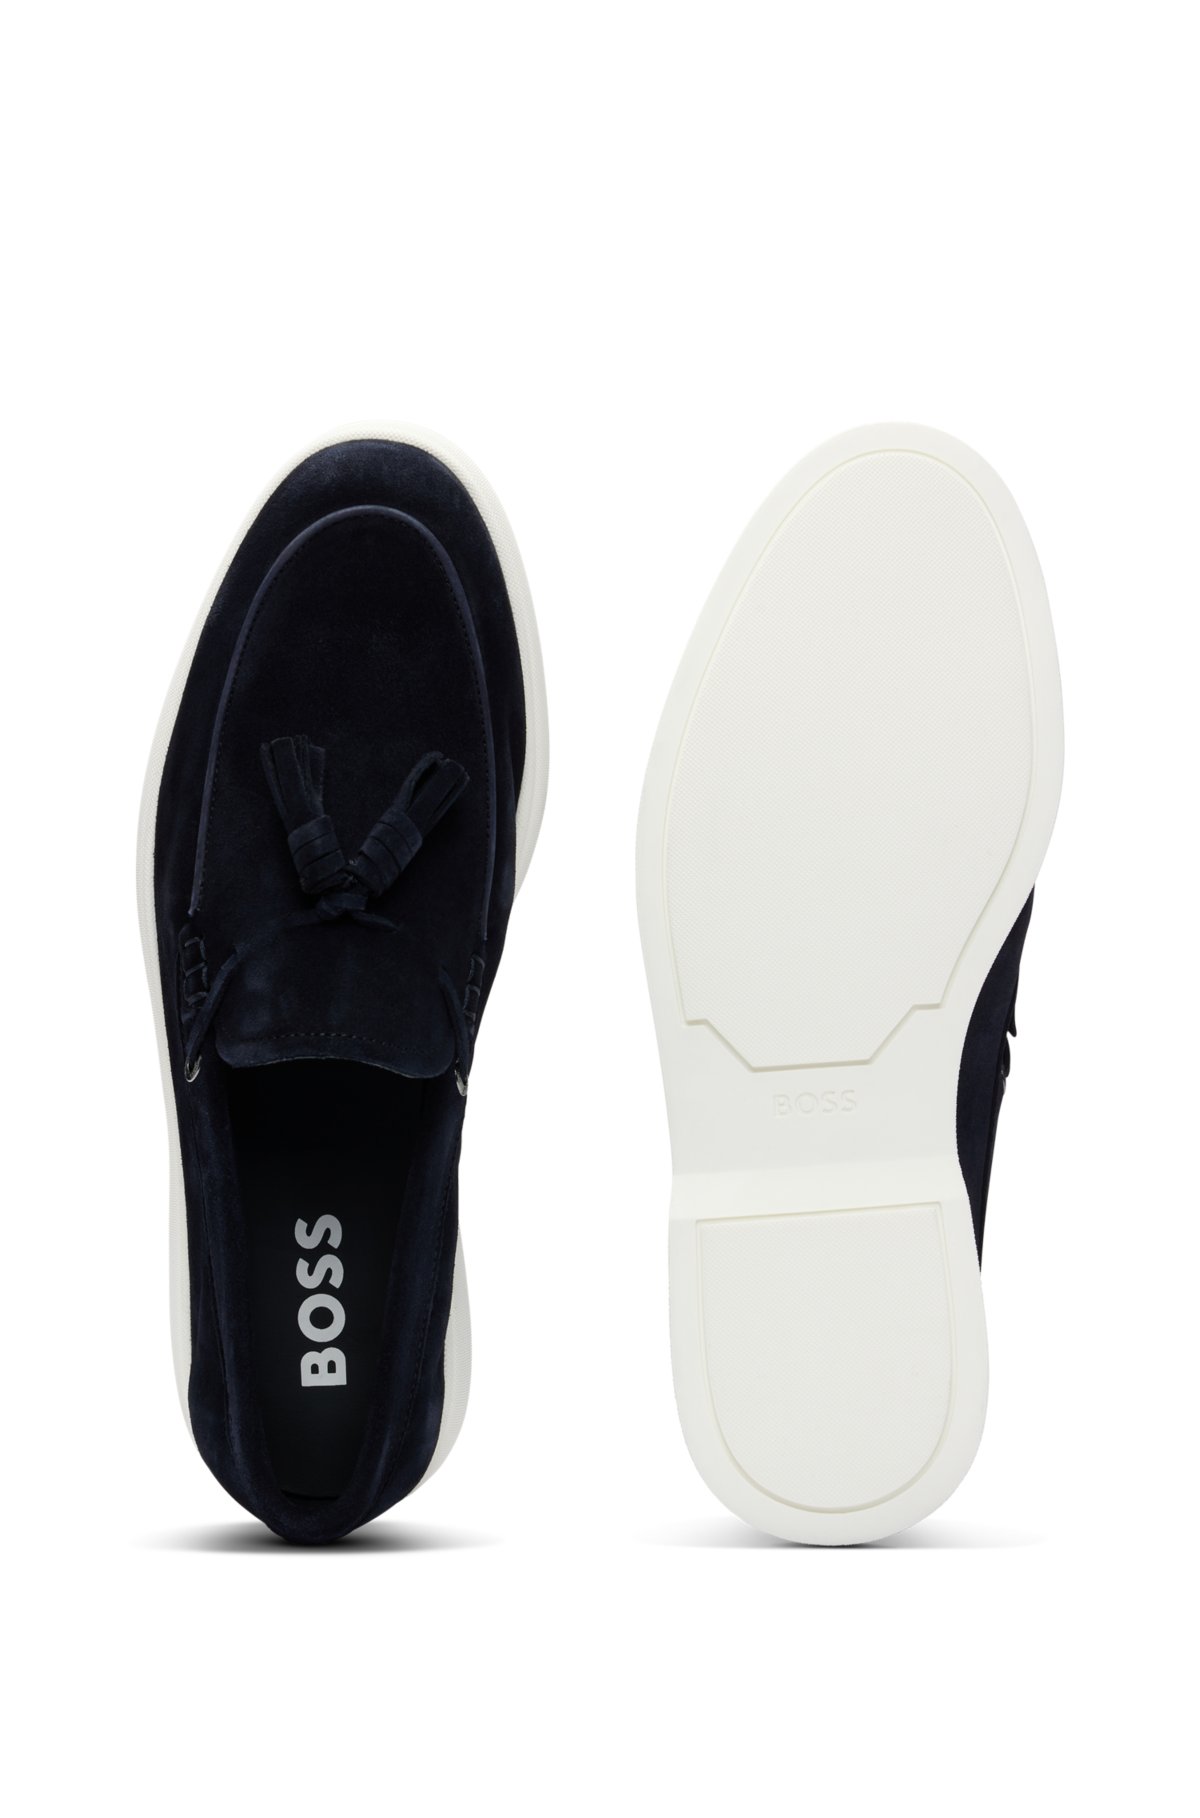 Suede slip-on loafers with tassel trim, Dark Blue